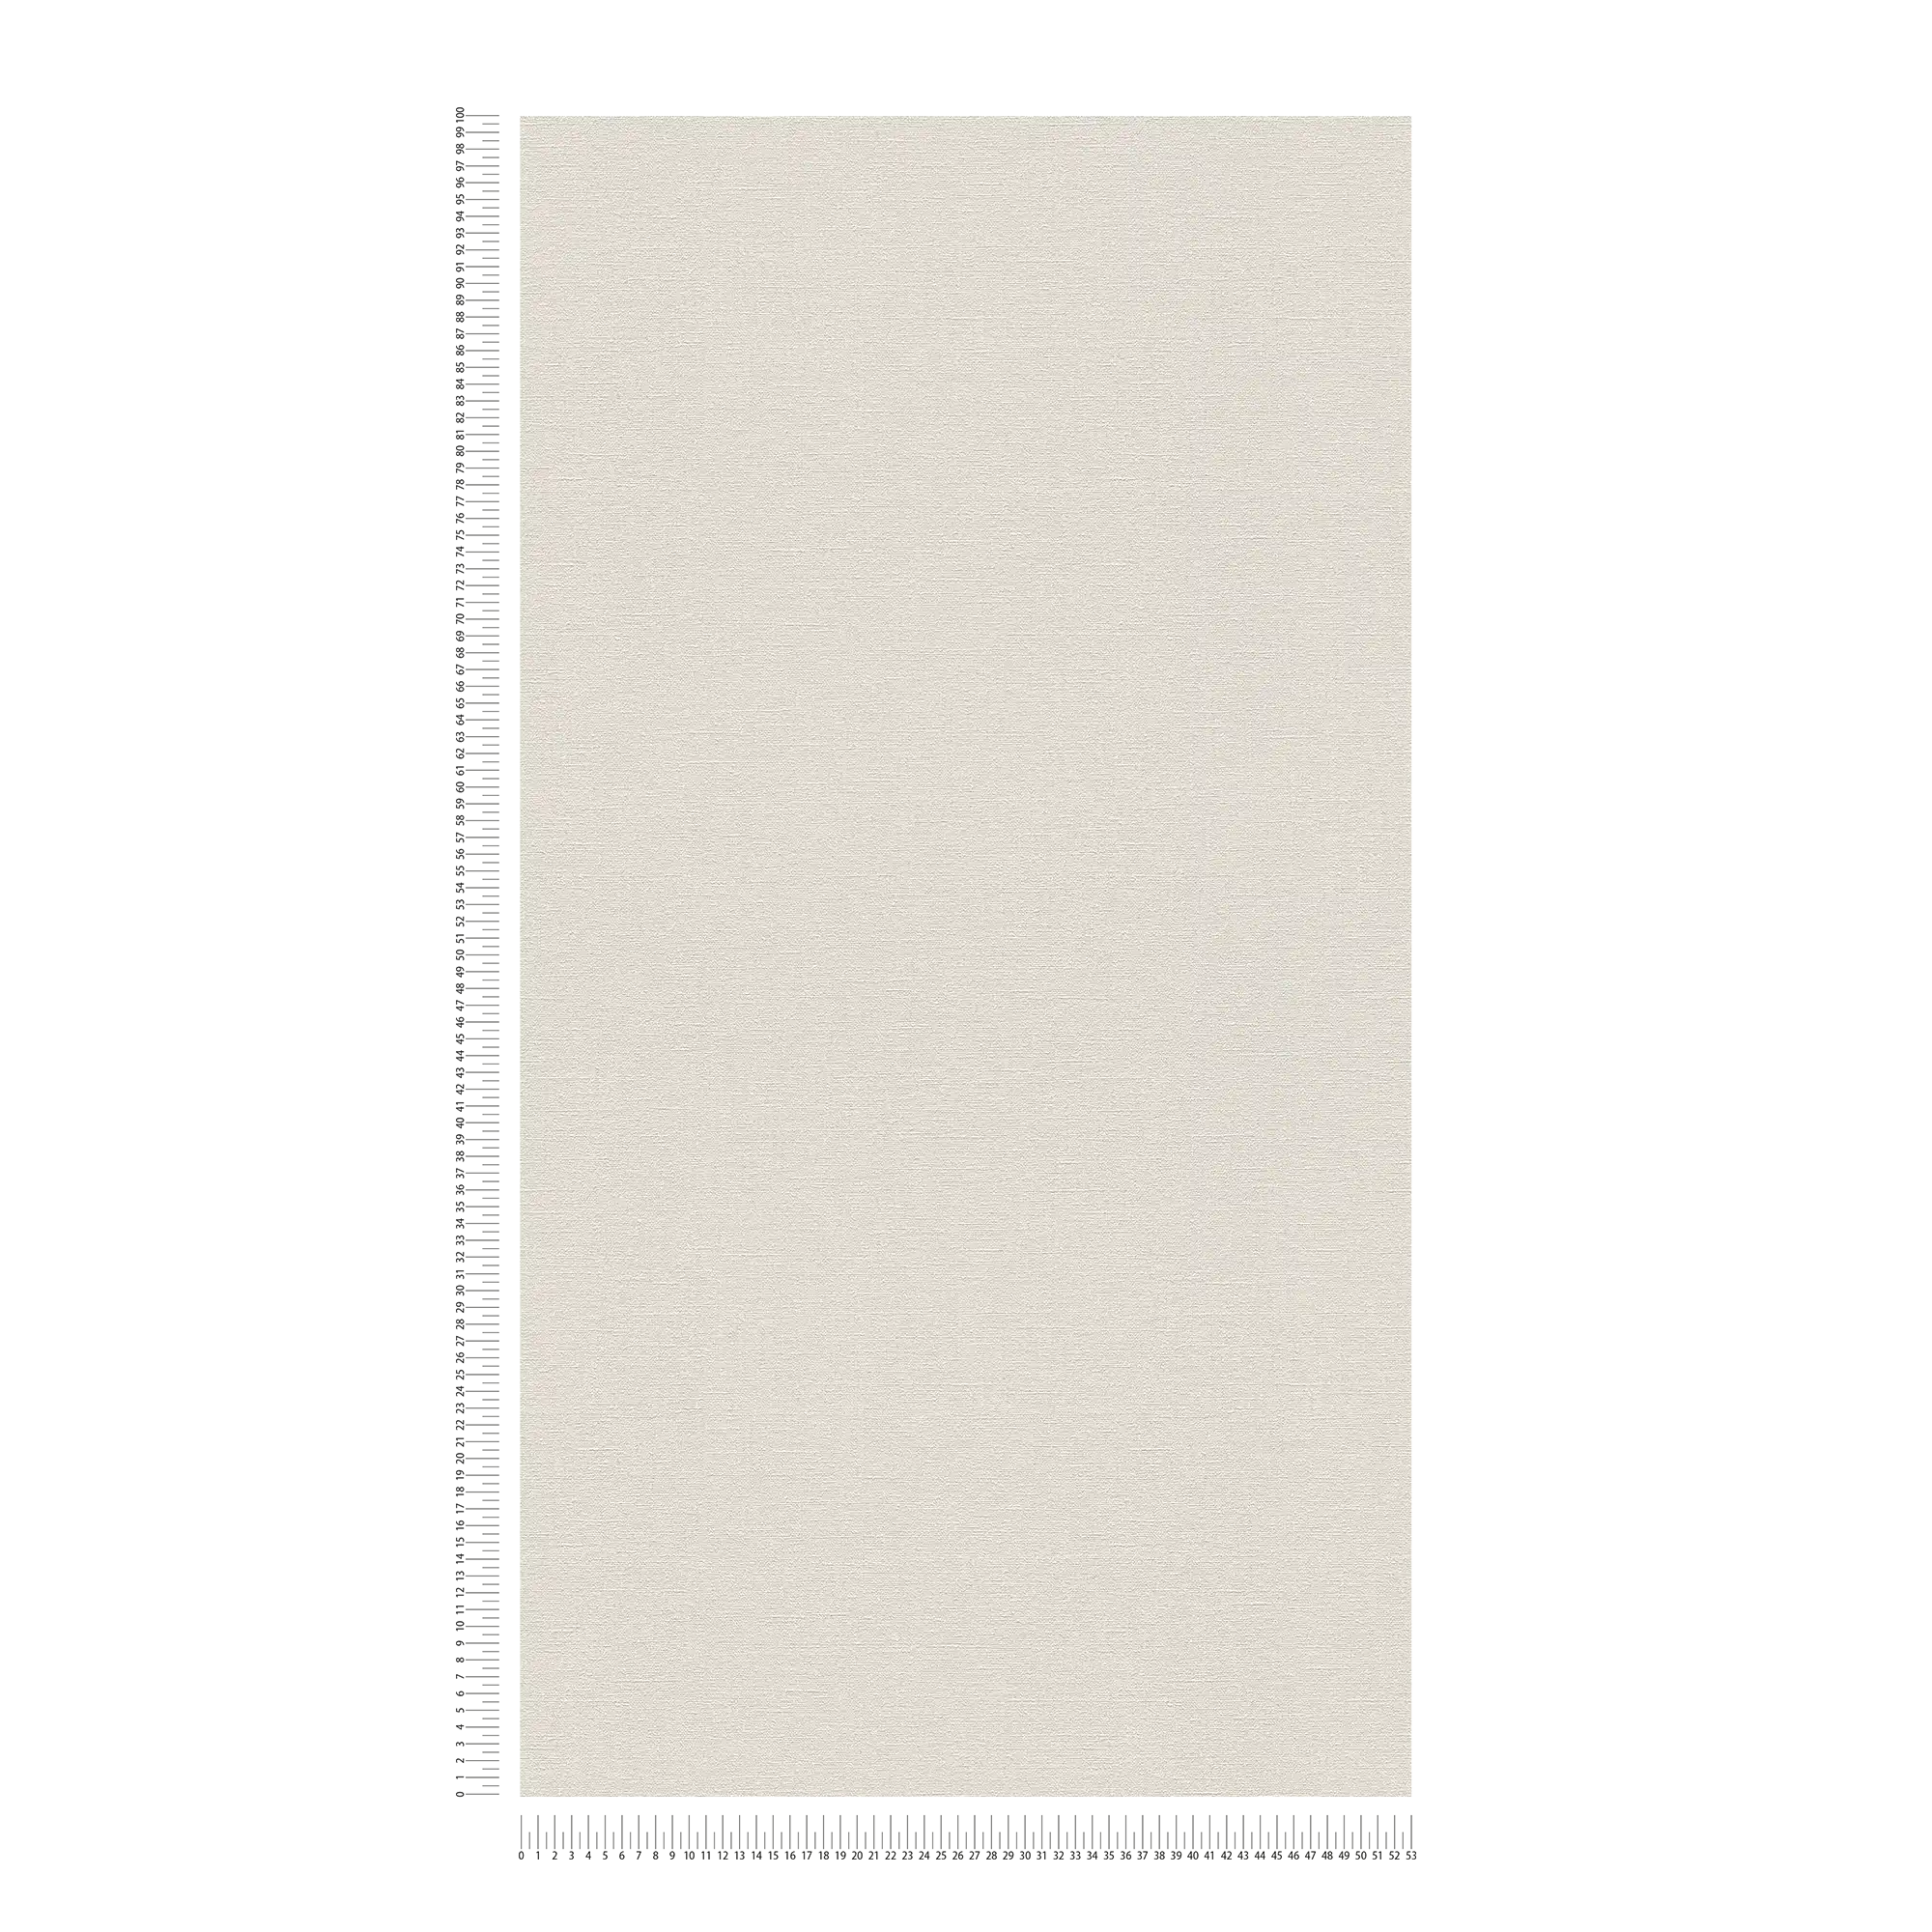             Papier peint gris-blanc uni & mat avec motifs structurés
        